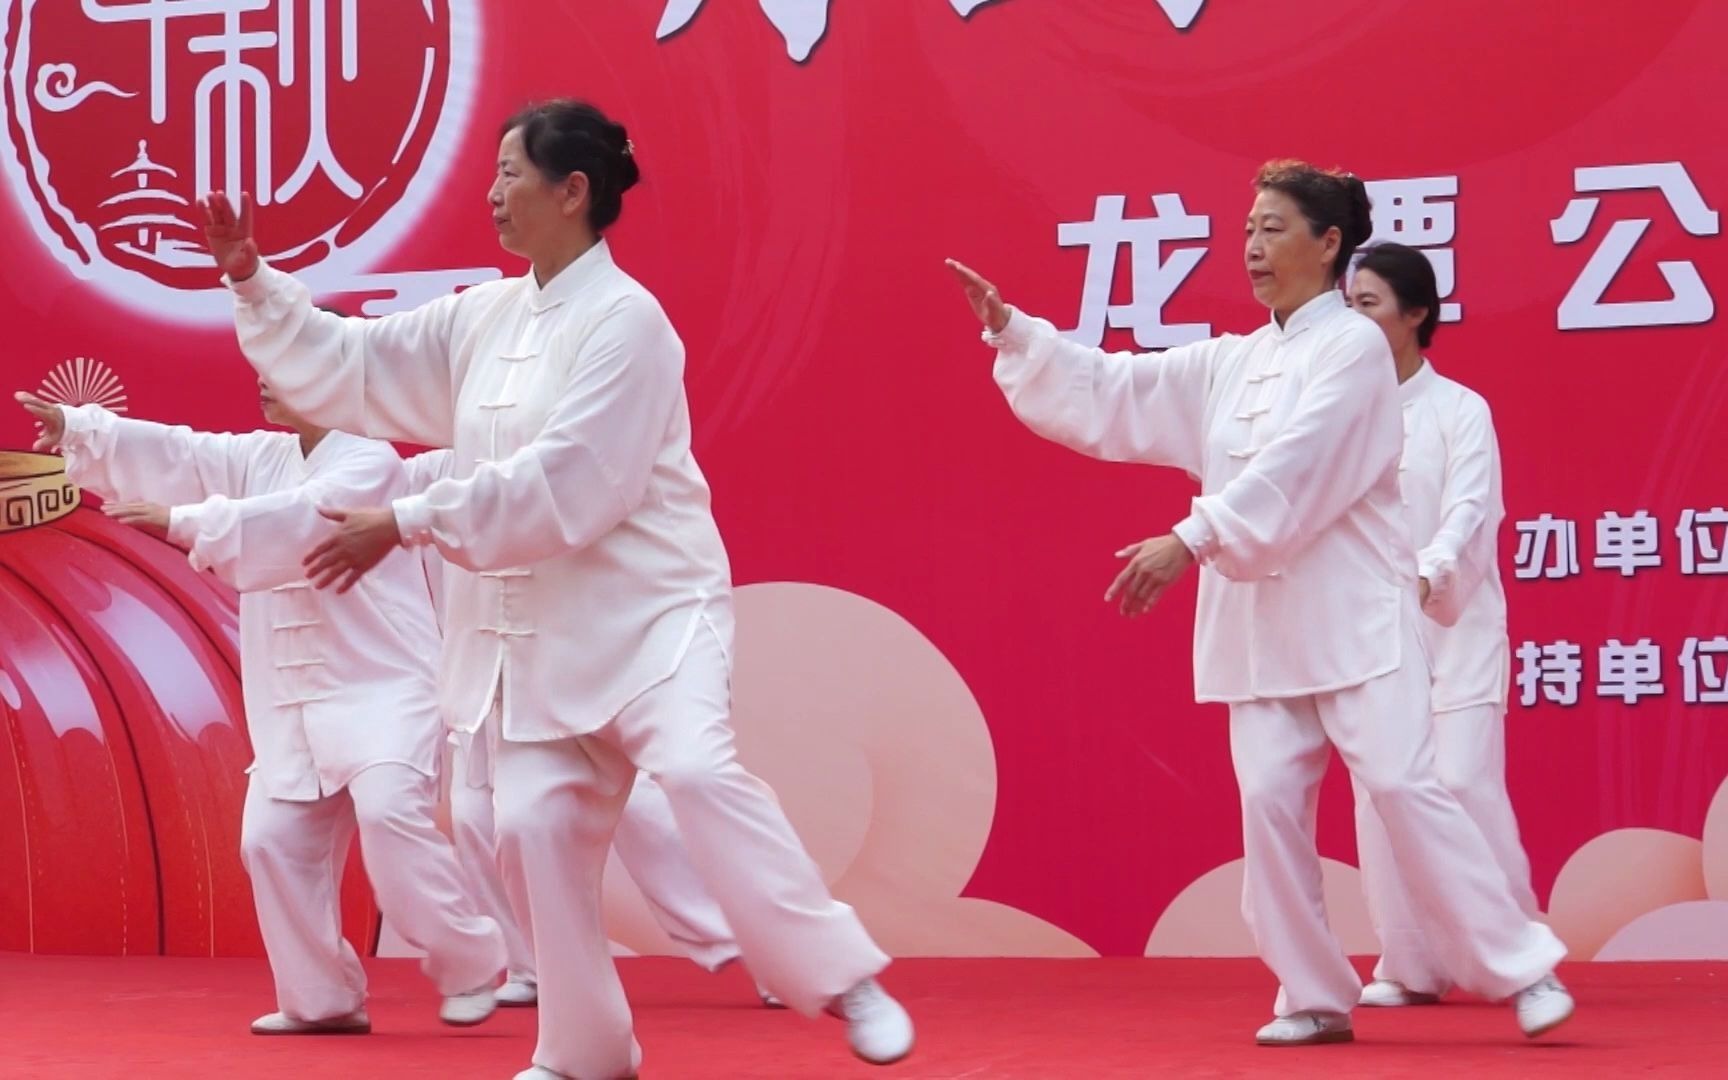 龙潭公园游人艺术节:《观音拳》表演,动作优美流畅